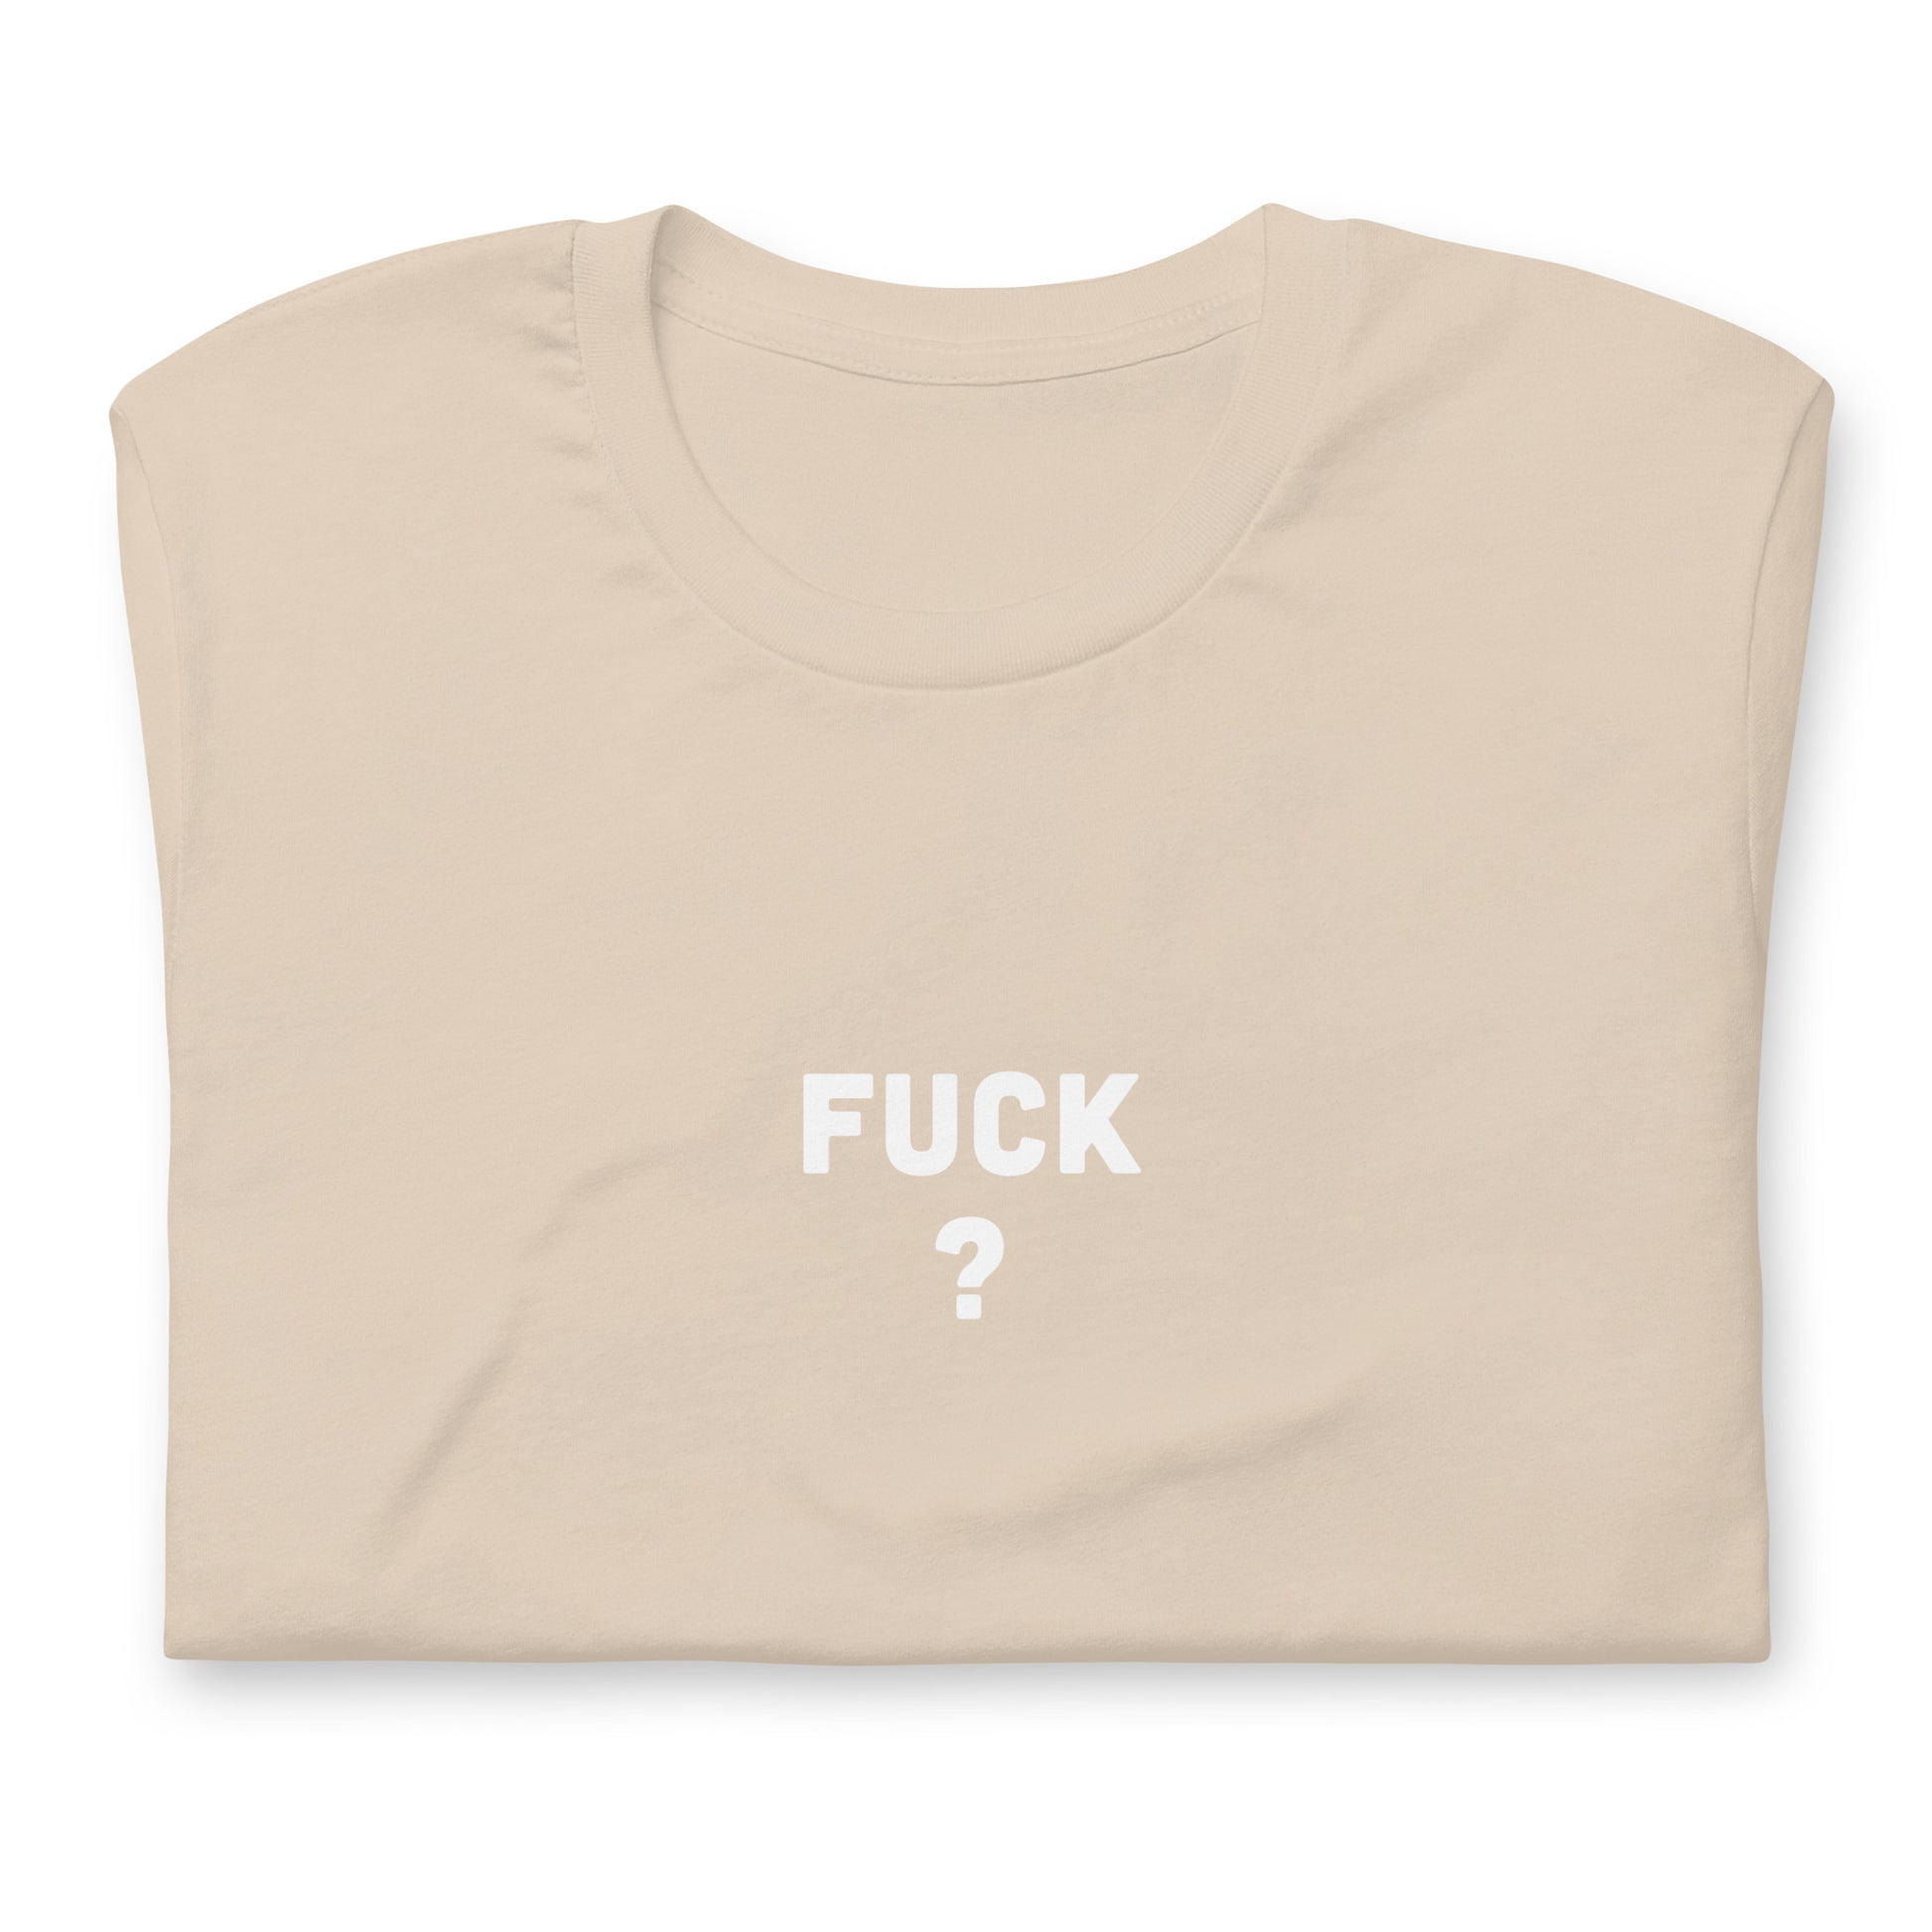 Fuck T-Shirt Size L Color Asphalt